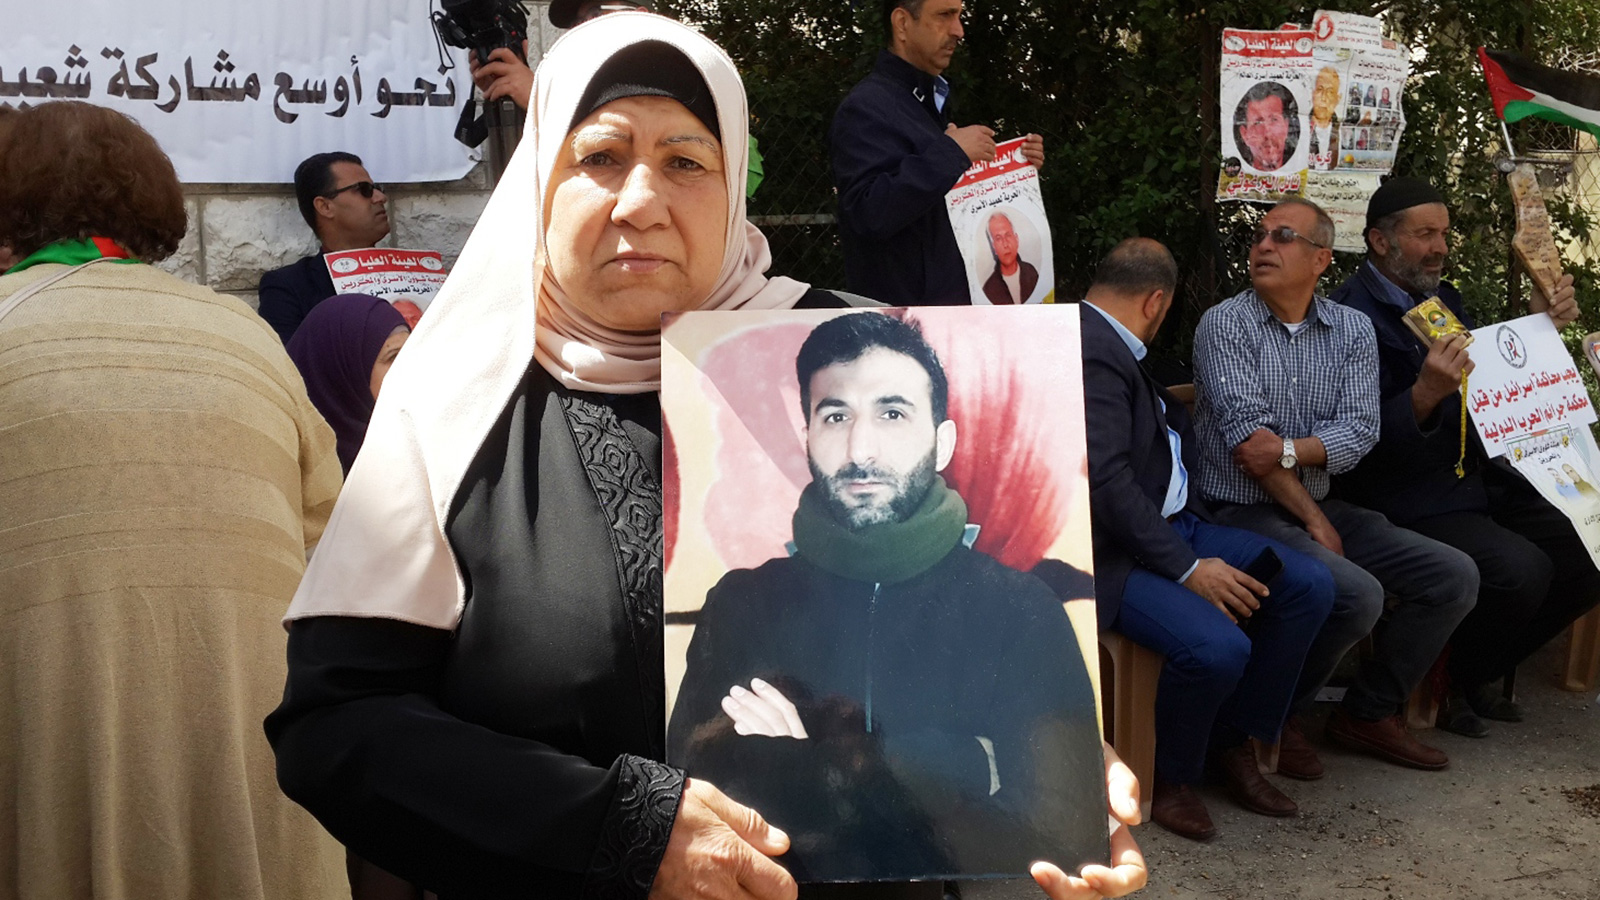 ‪والدة الأسير مجدي قبيسي تطالب بدعم شعبي لإضراب الأسرى‬ (الجزيرة)